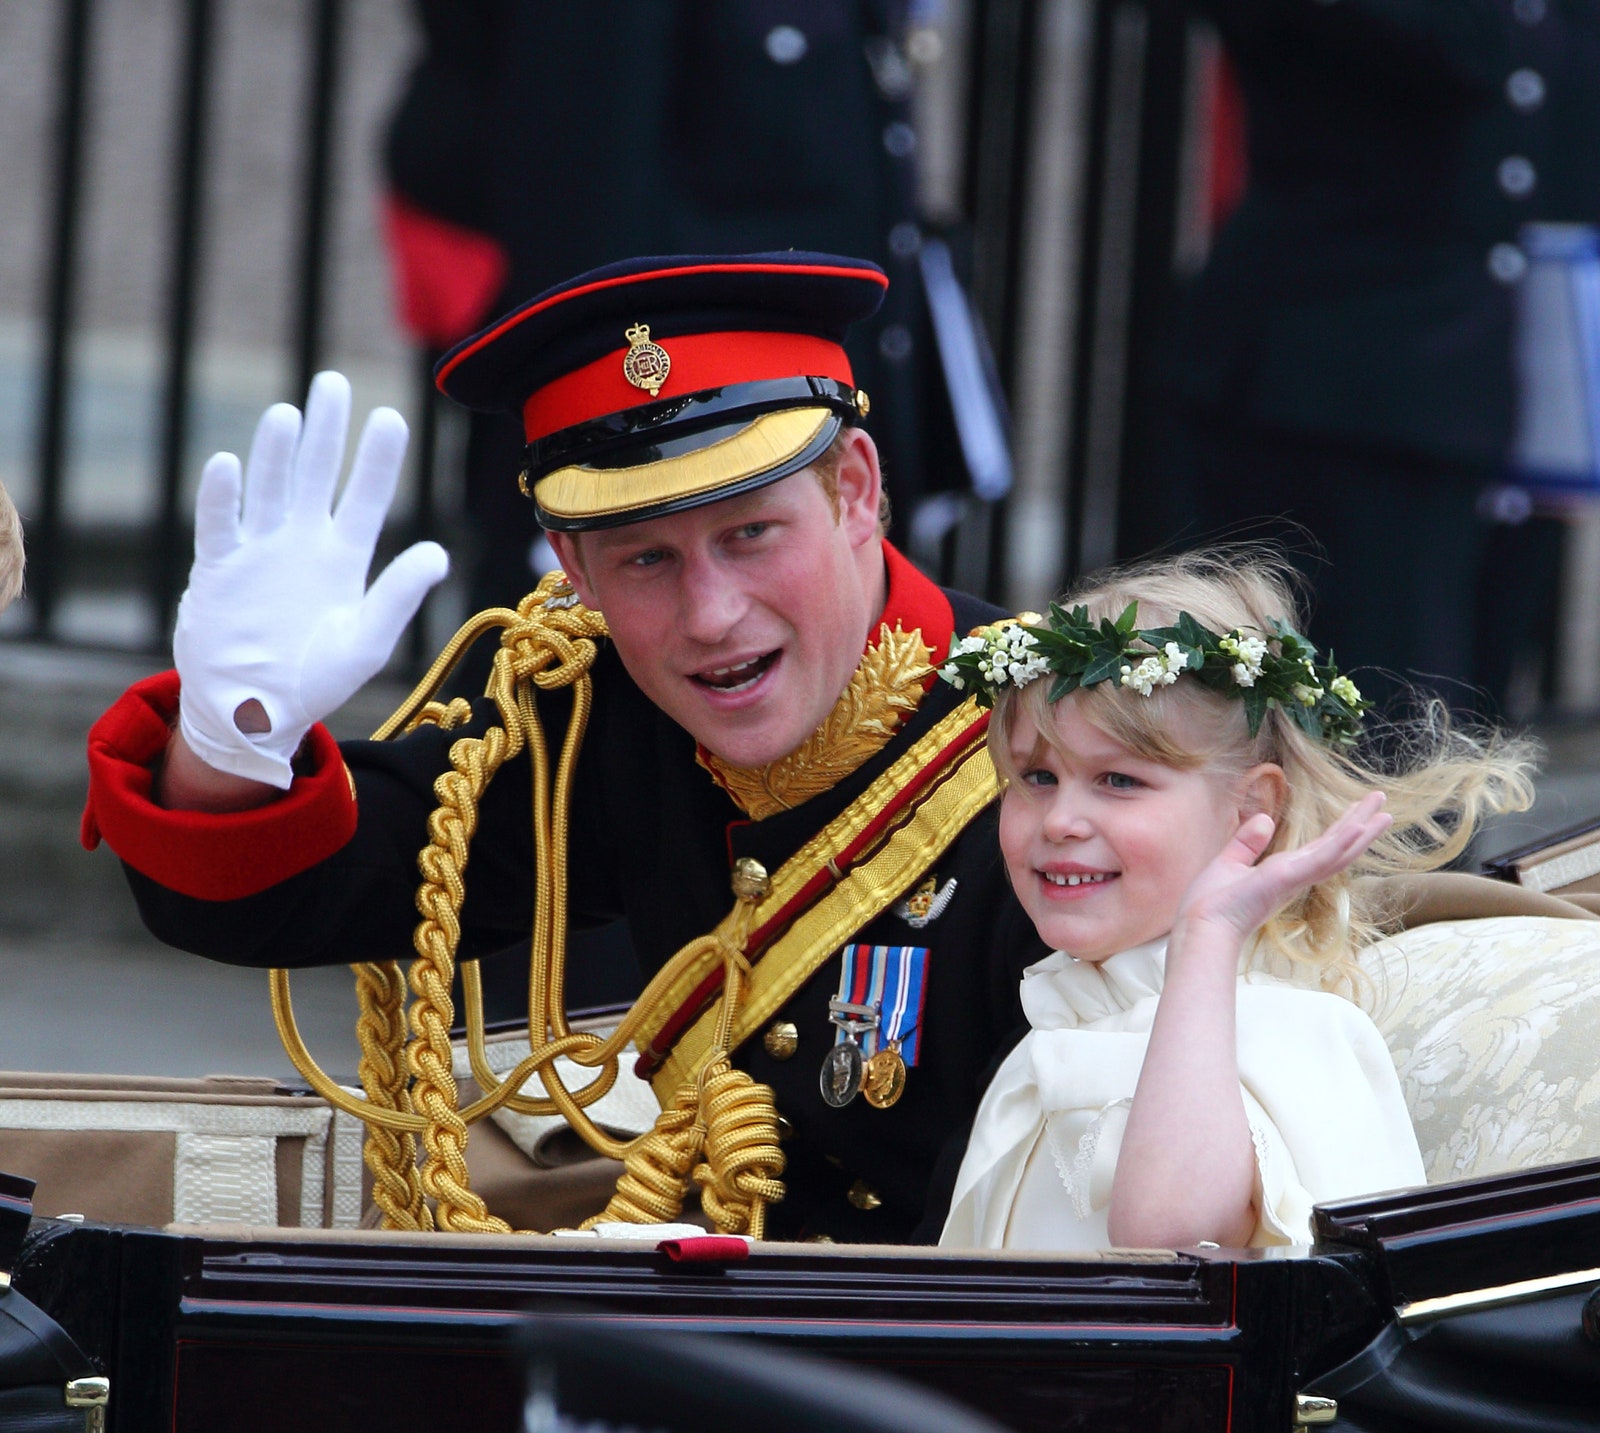 Принц Гарри и леди Луиза Виндзор на свадьбе принца Уильяма и Кейт Миддлтон 2011